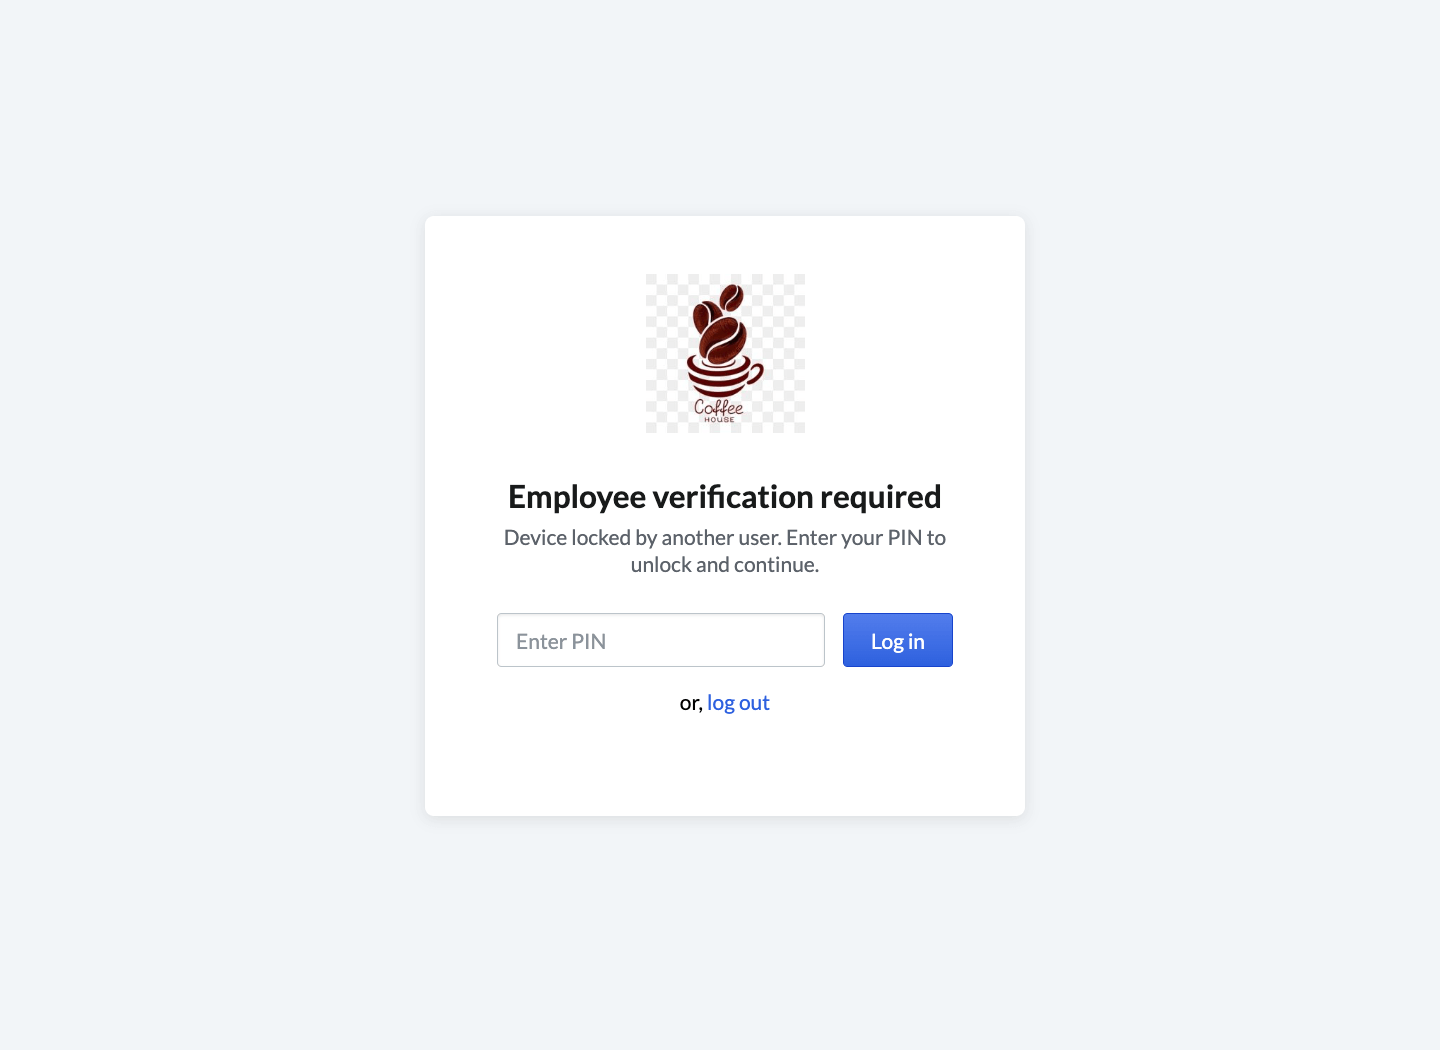 Pagina waar verificatie wordt vereist met pincode van de werknemer.